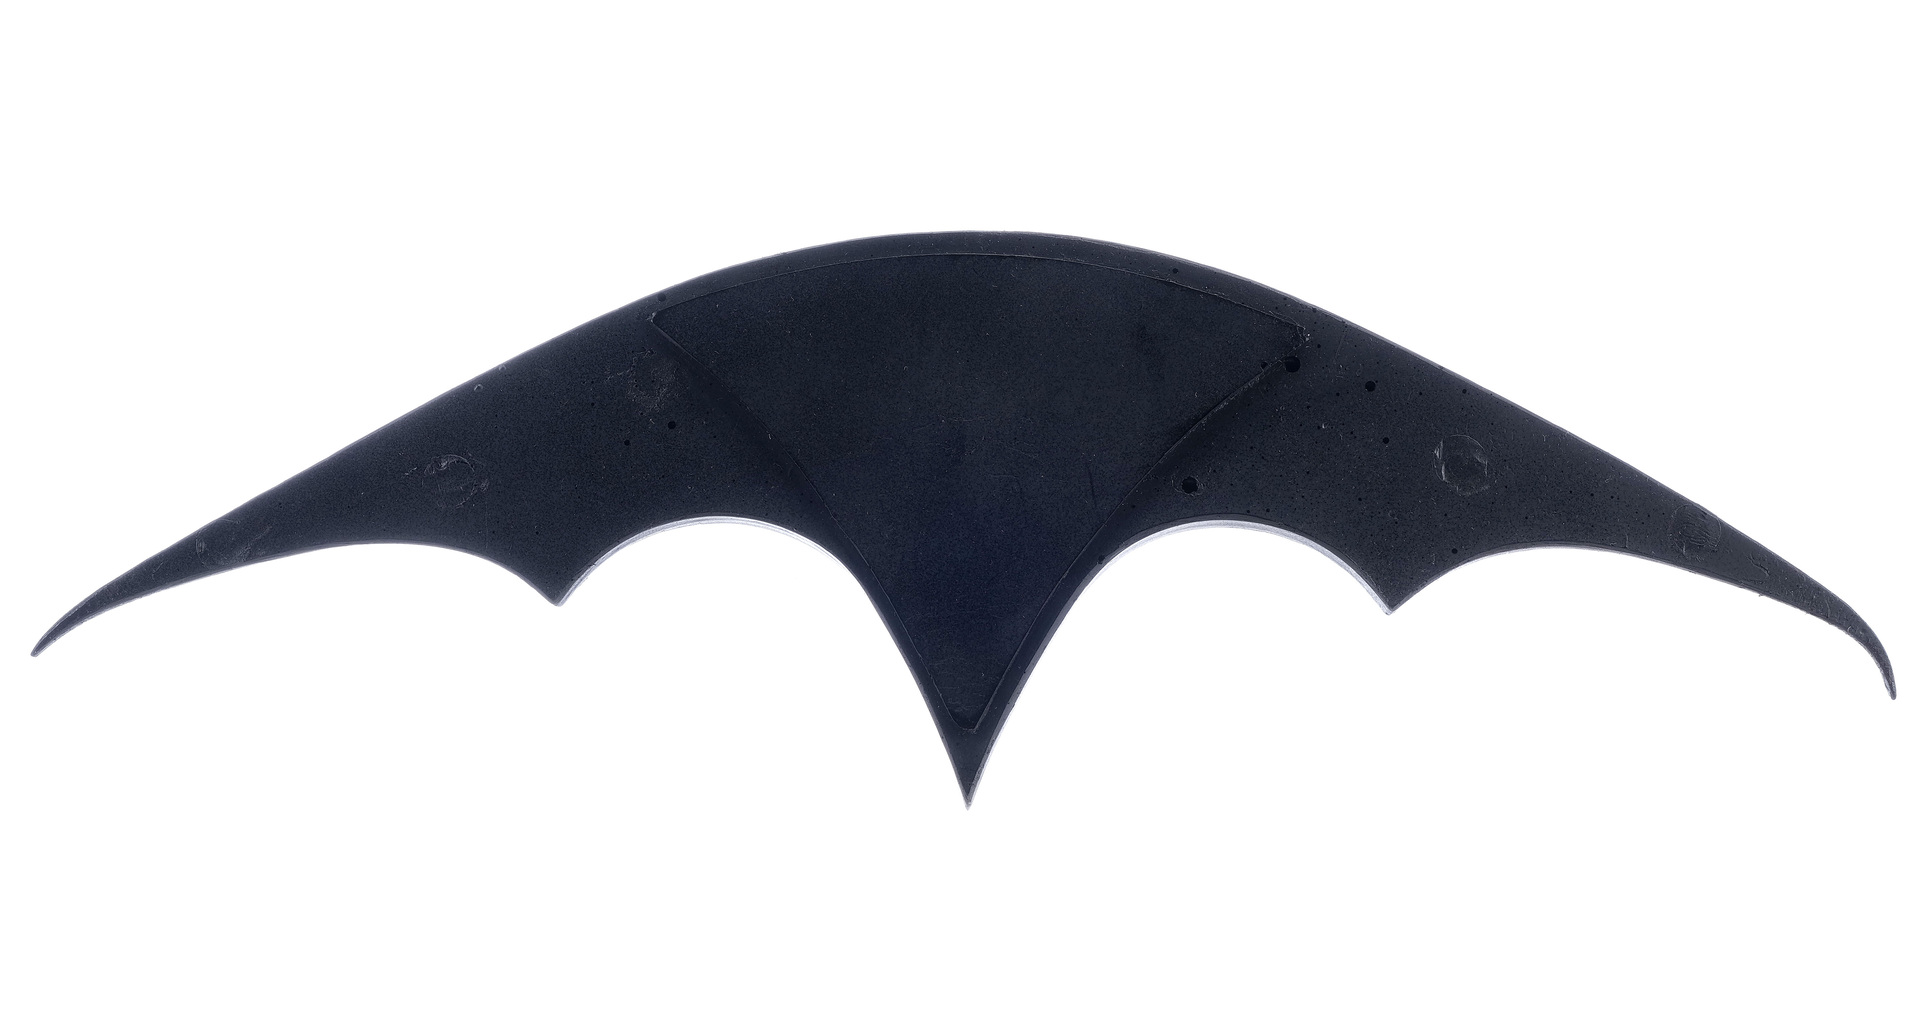 BATMAN RETURNS - Batman's Stunt Super-Batarang - Image 4 of 6